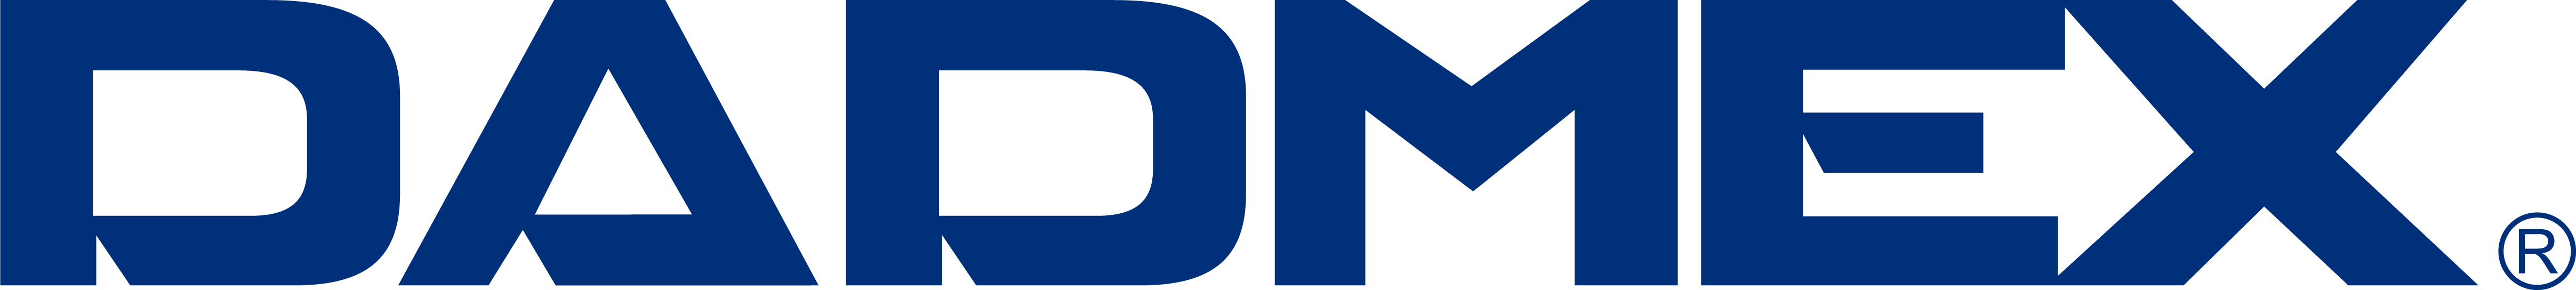 Dadmex logo